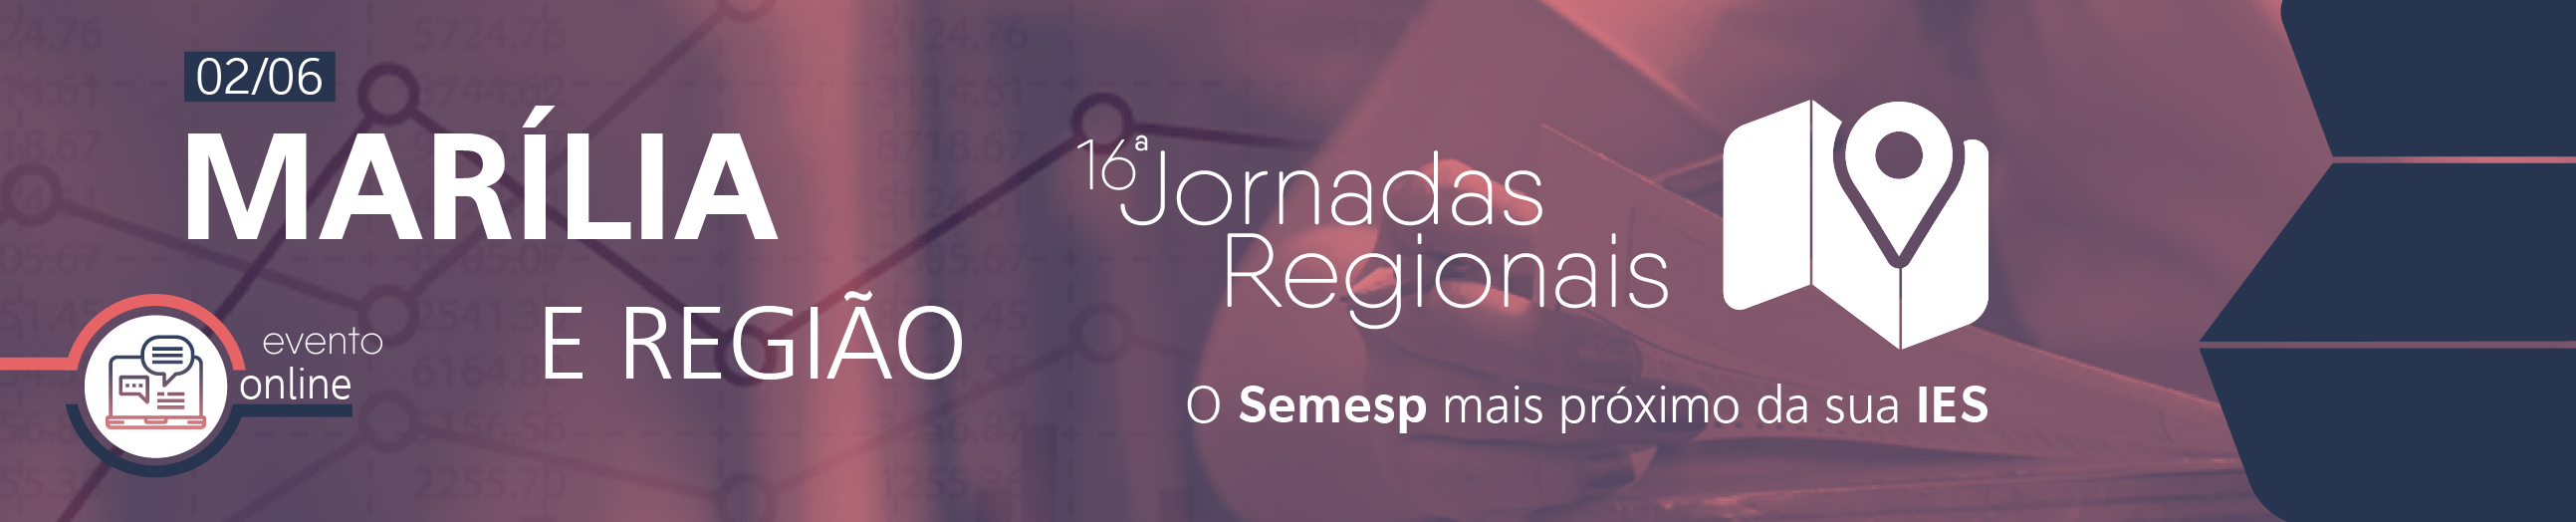 Jornadas Regionais | 16ª Edição - Marília